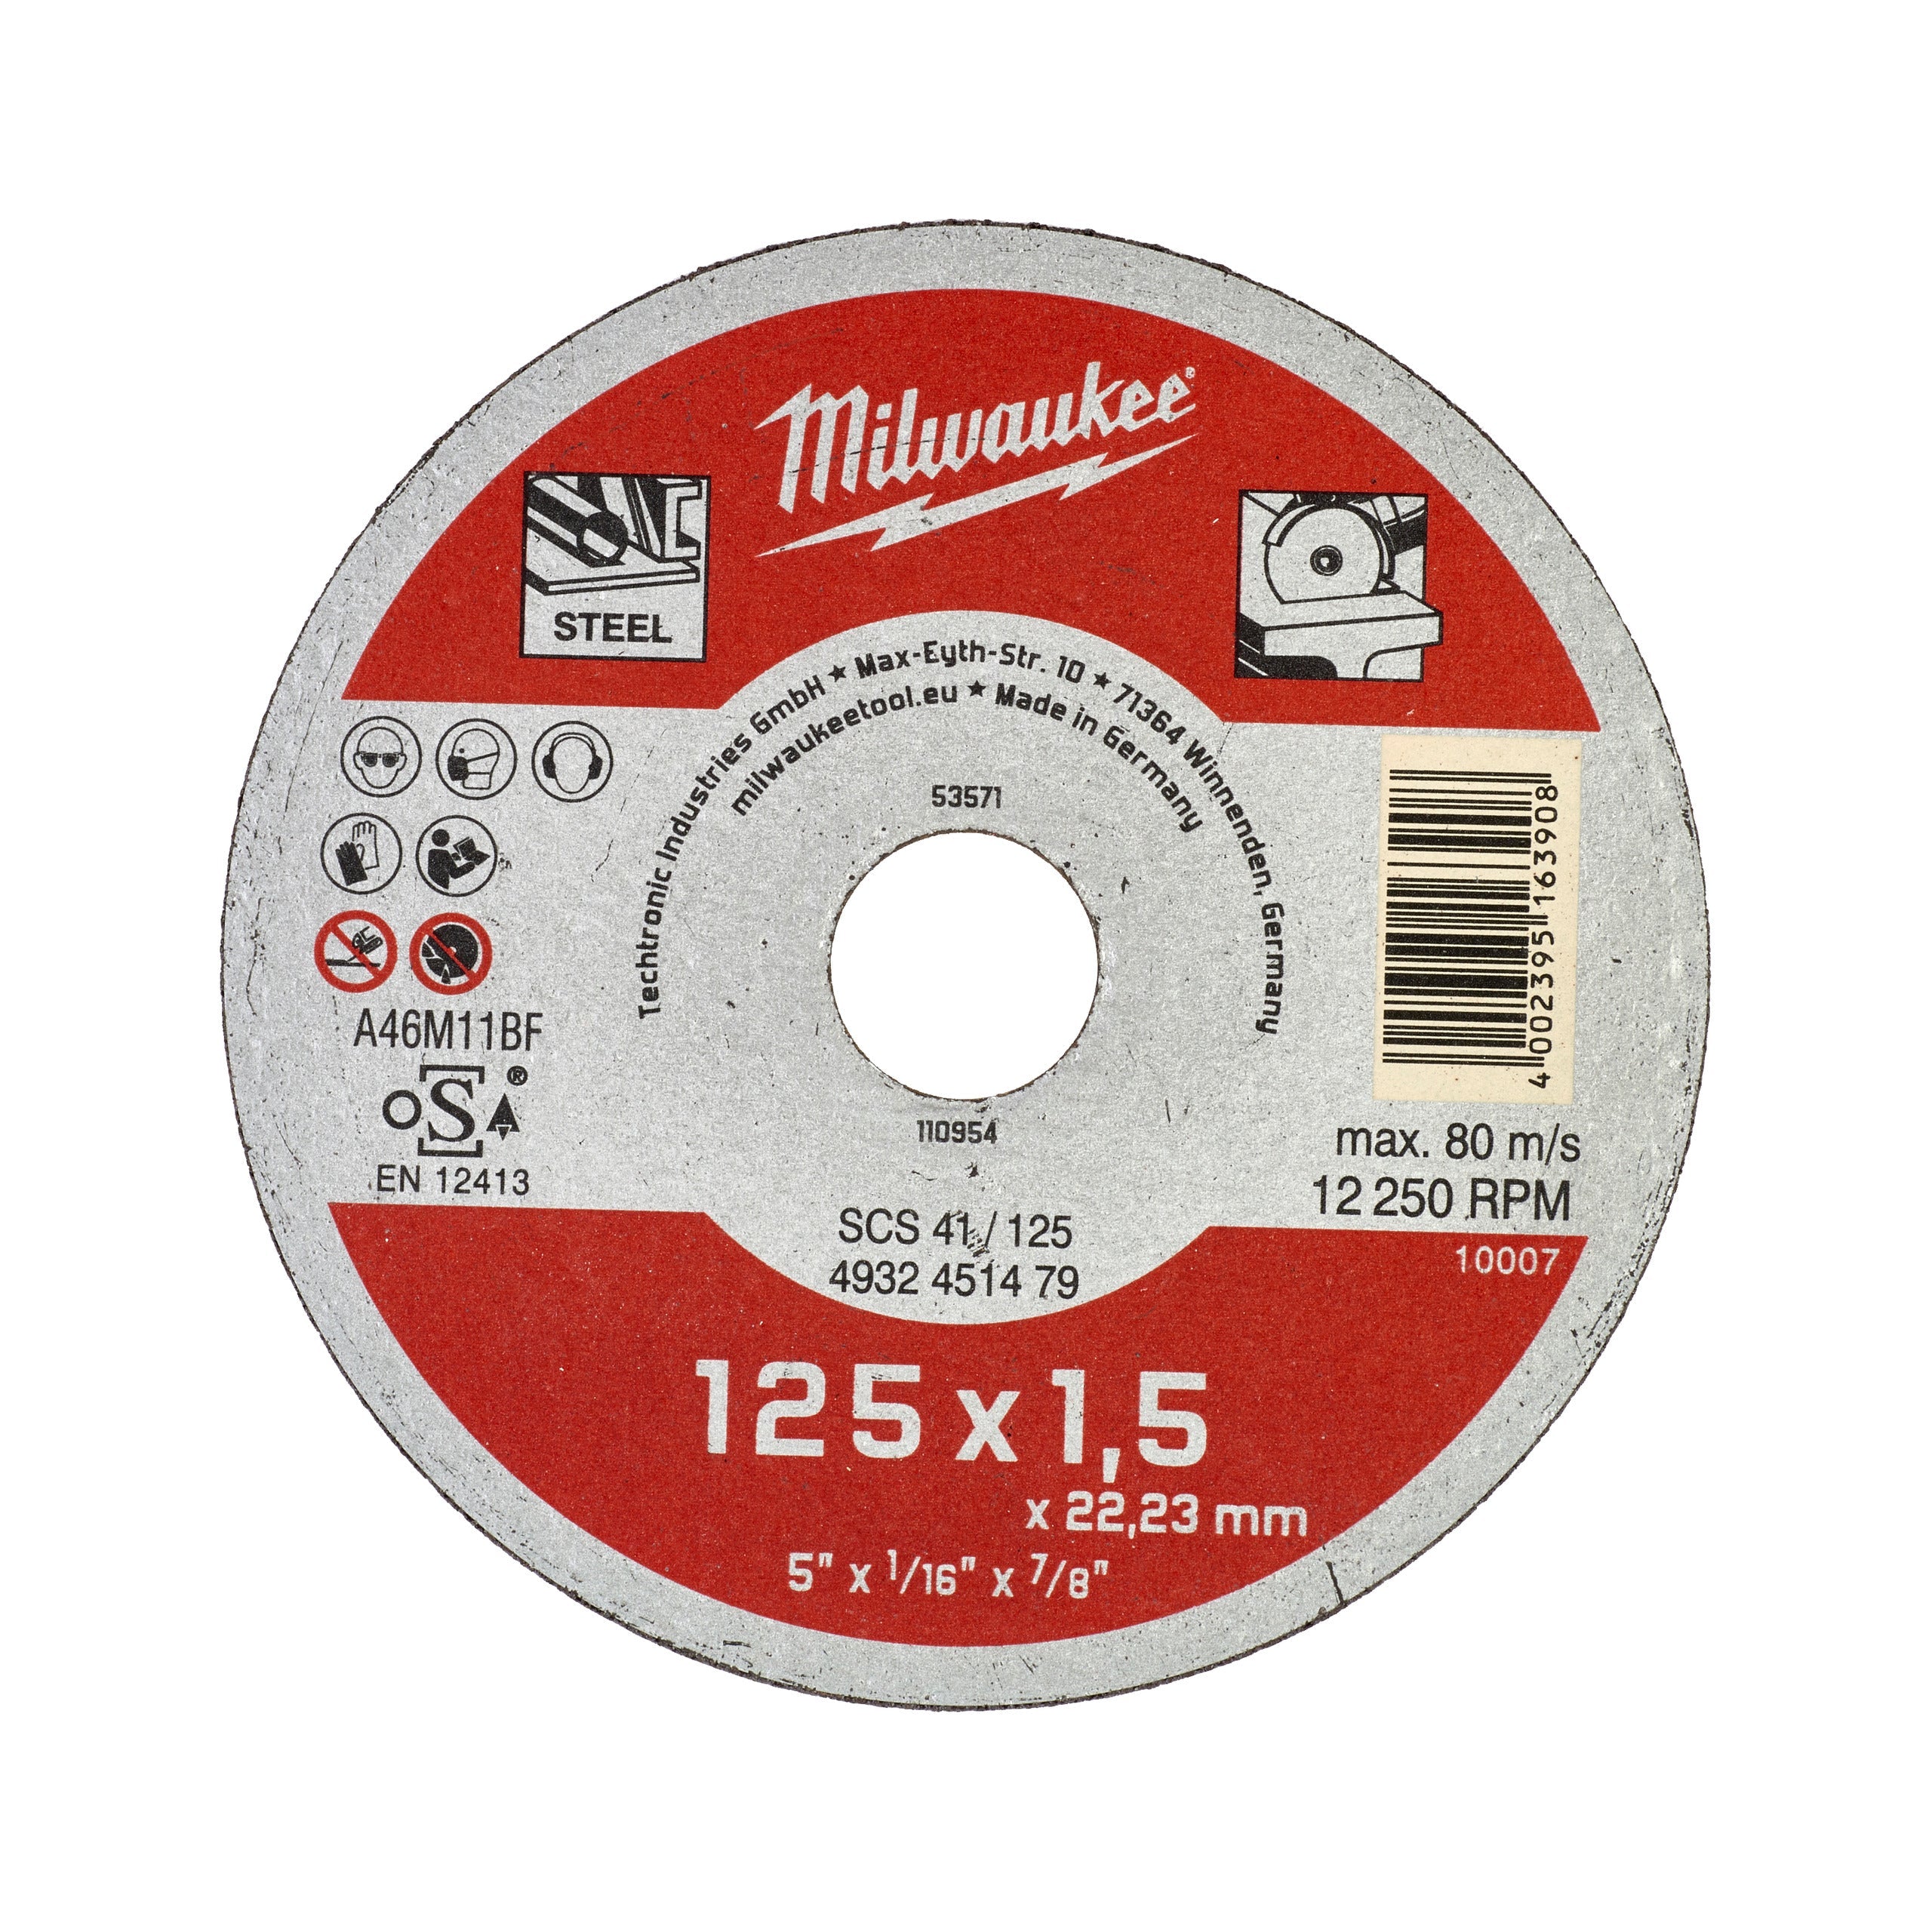 Discuri debitare metal - seria contractanți 125X1,5 Milwaukee cod 4932451479